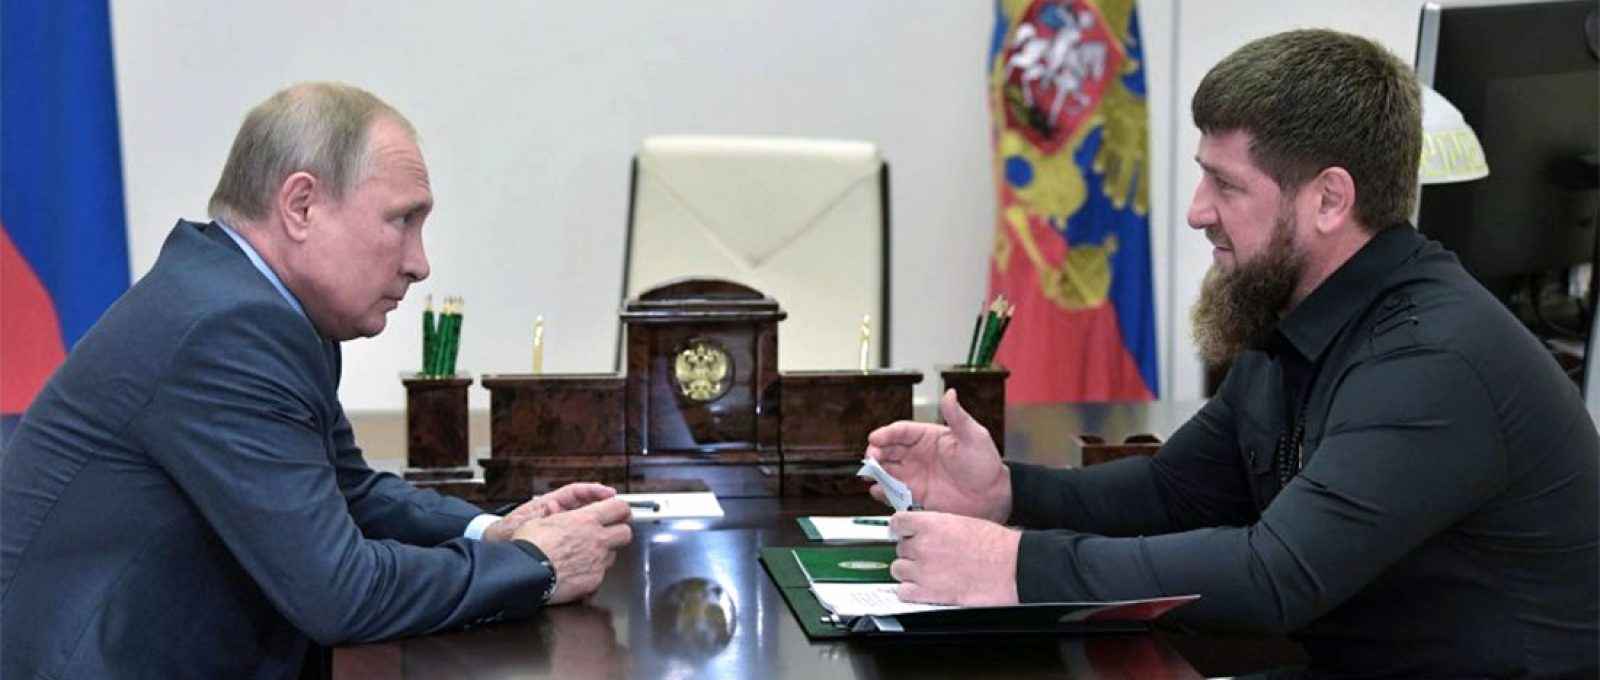 O presidente da Rússia, Vladimir Putin, encontra-se com o líder da República Chechena, Ramzan Kadyrov, em Novo-Ogaryovo, arredores de Moscou, Rússia, em 31 de agosto de 2019 (Aleksey Nikolskyi/EPA-EFE/Sputnik).